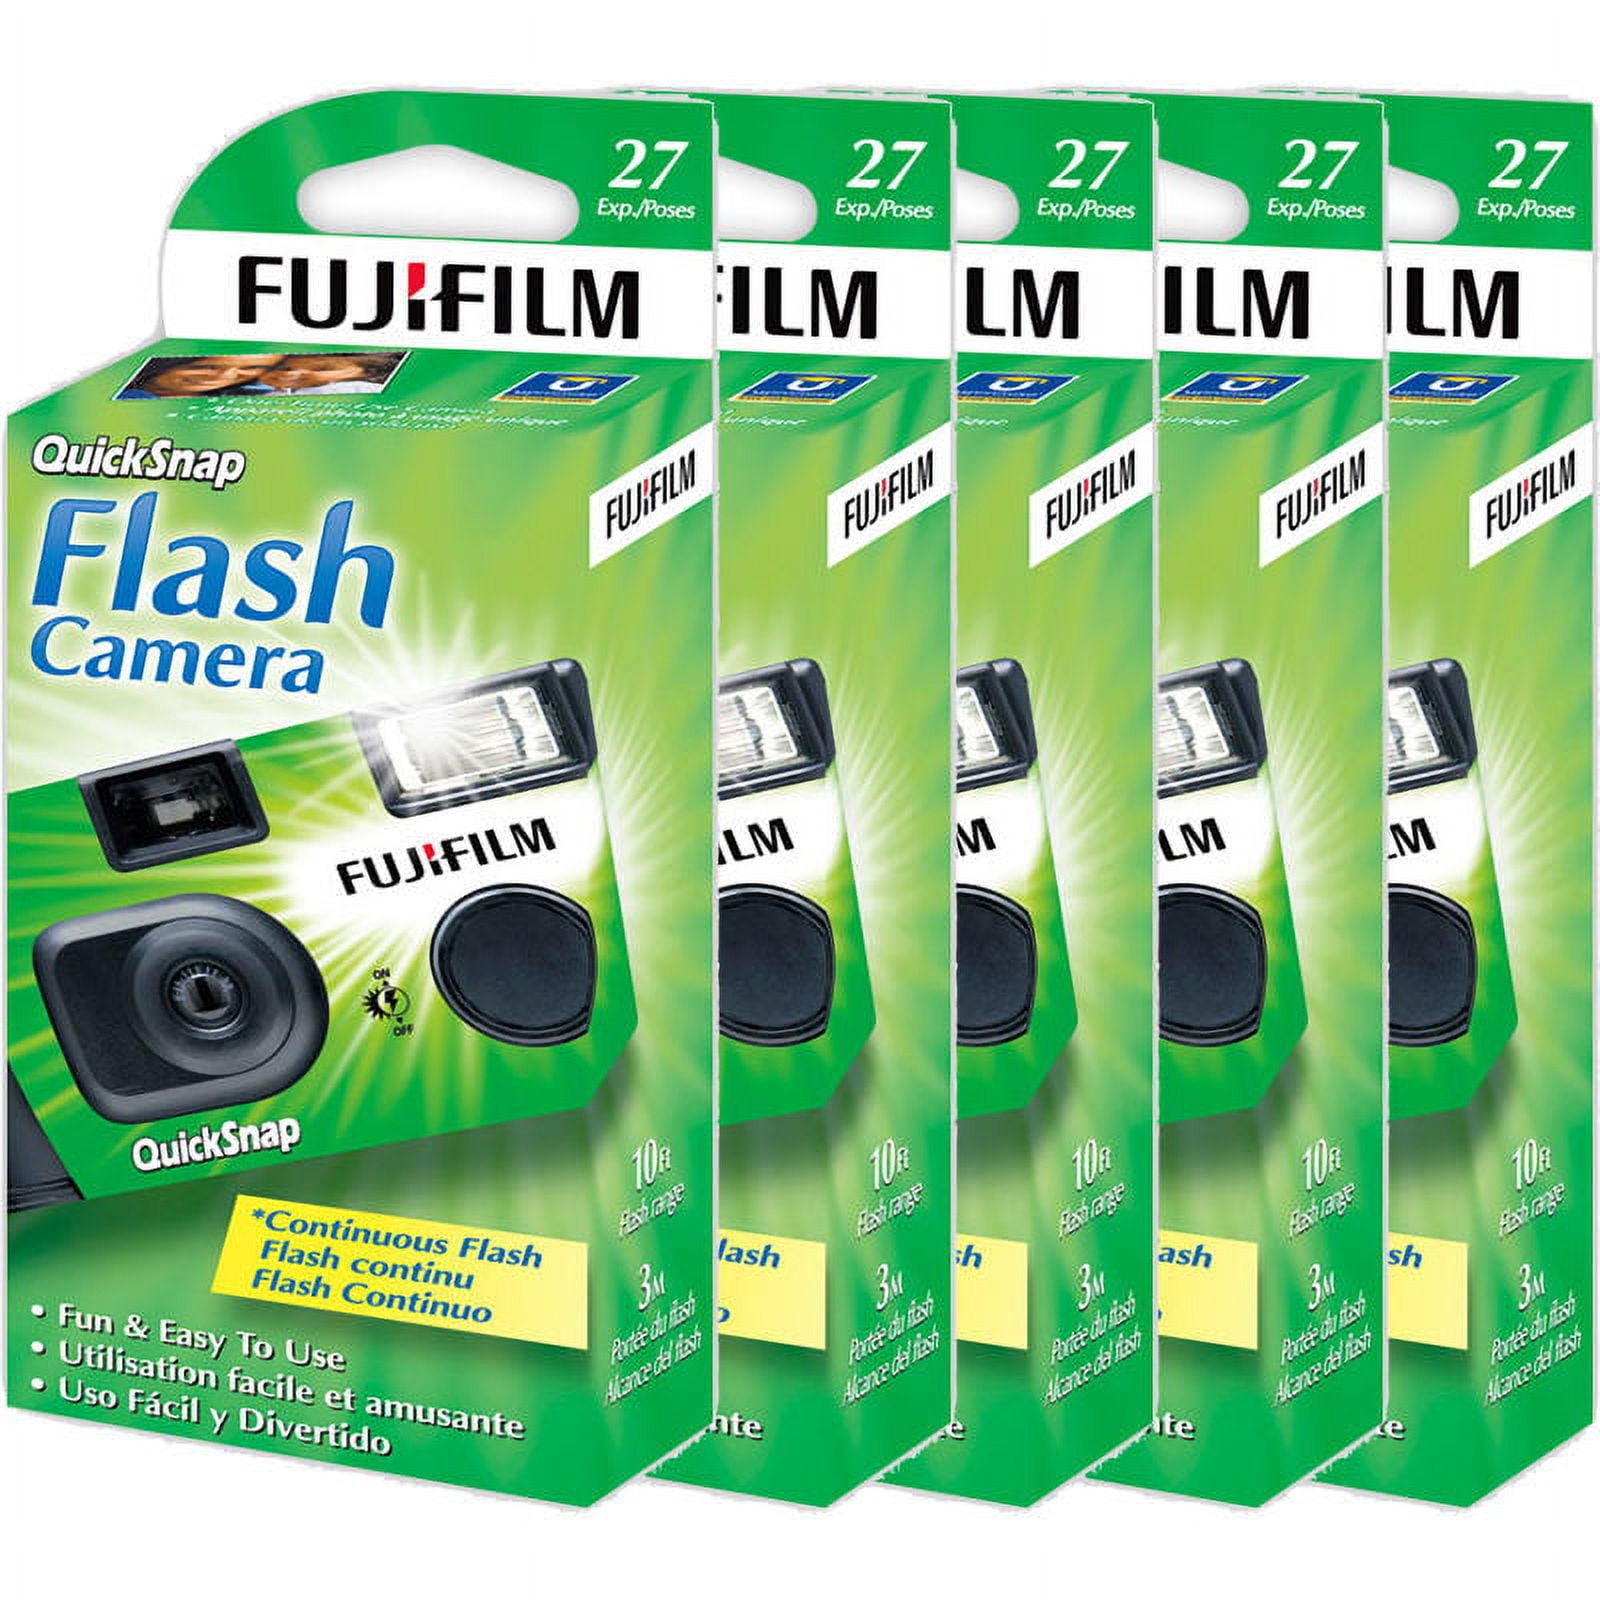 Cámara desechable Fujifilm QuickSnap Flash 400 de 35 mm (paquete de 2)